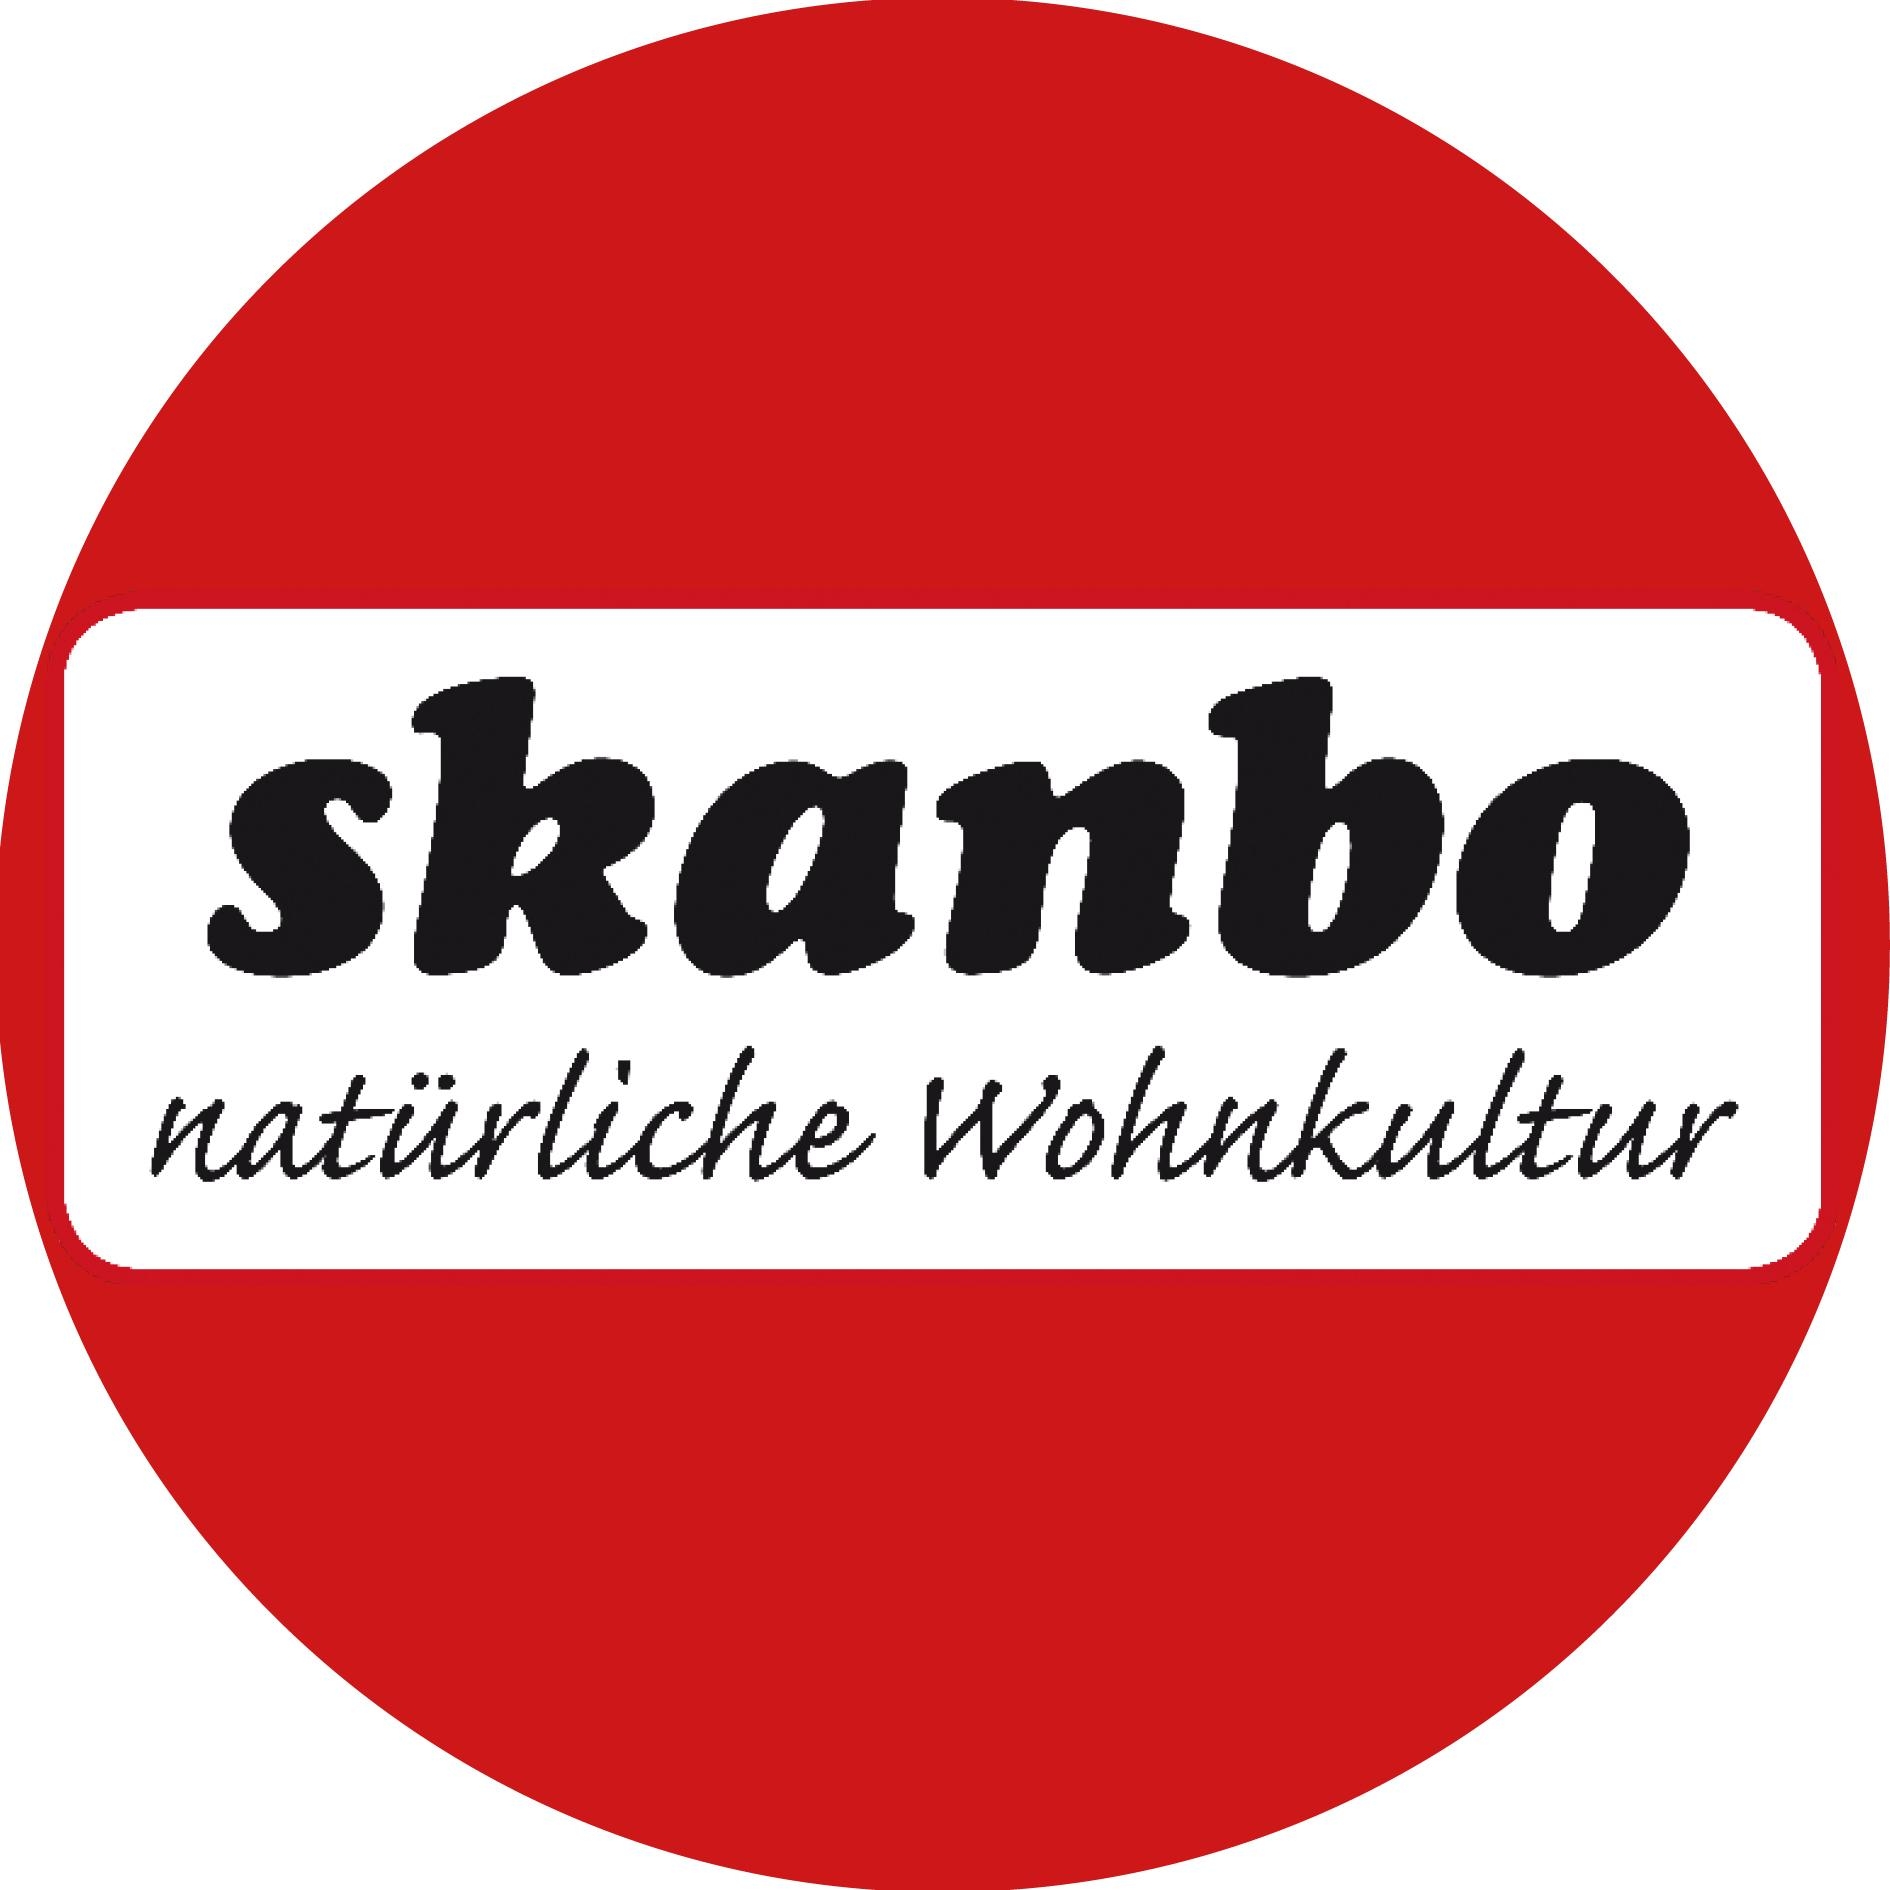 Skanbo